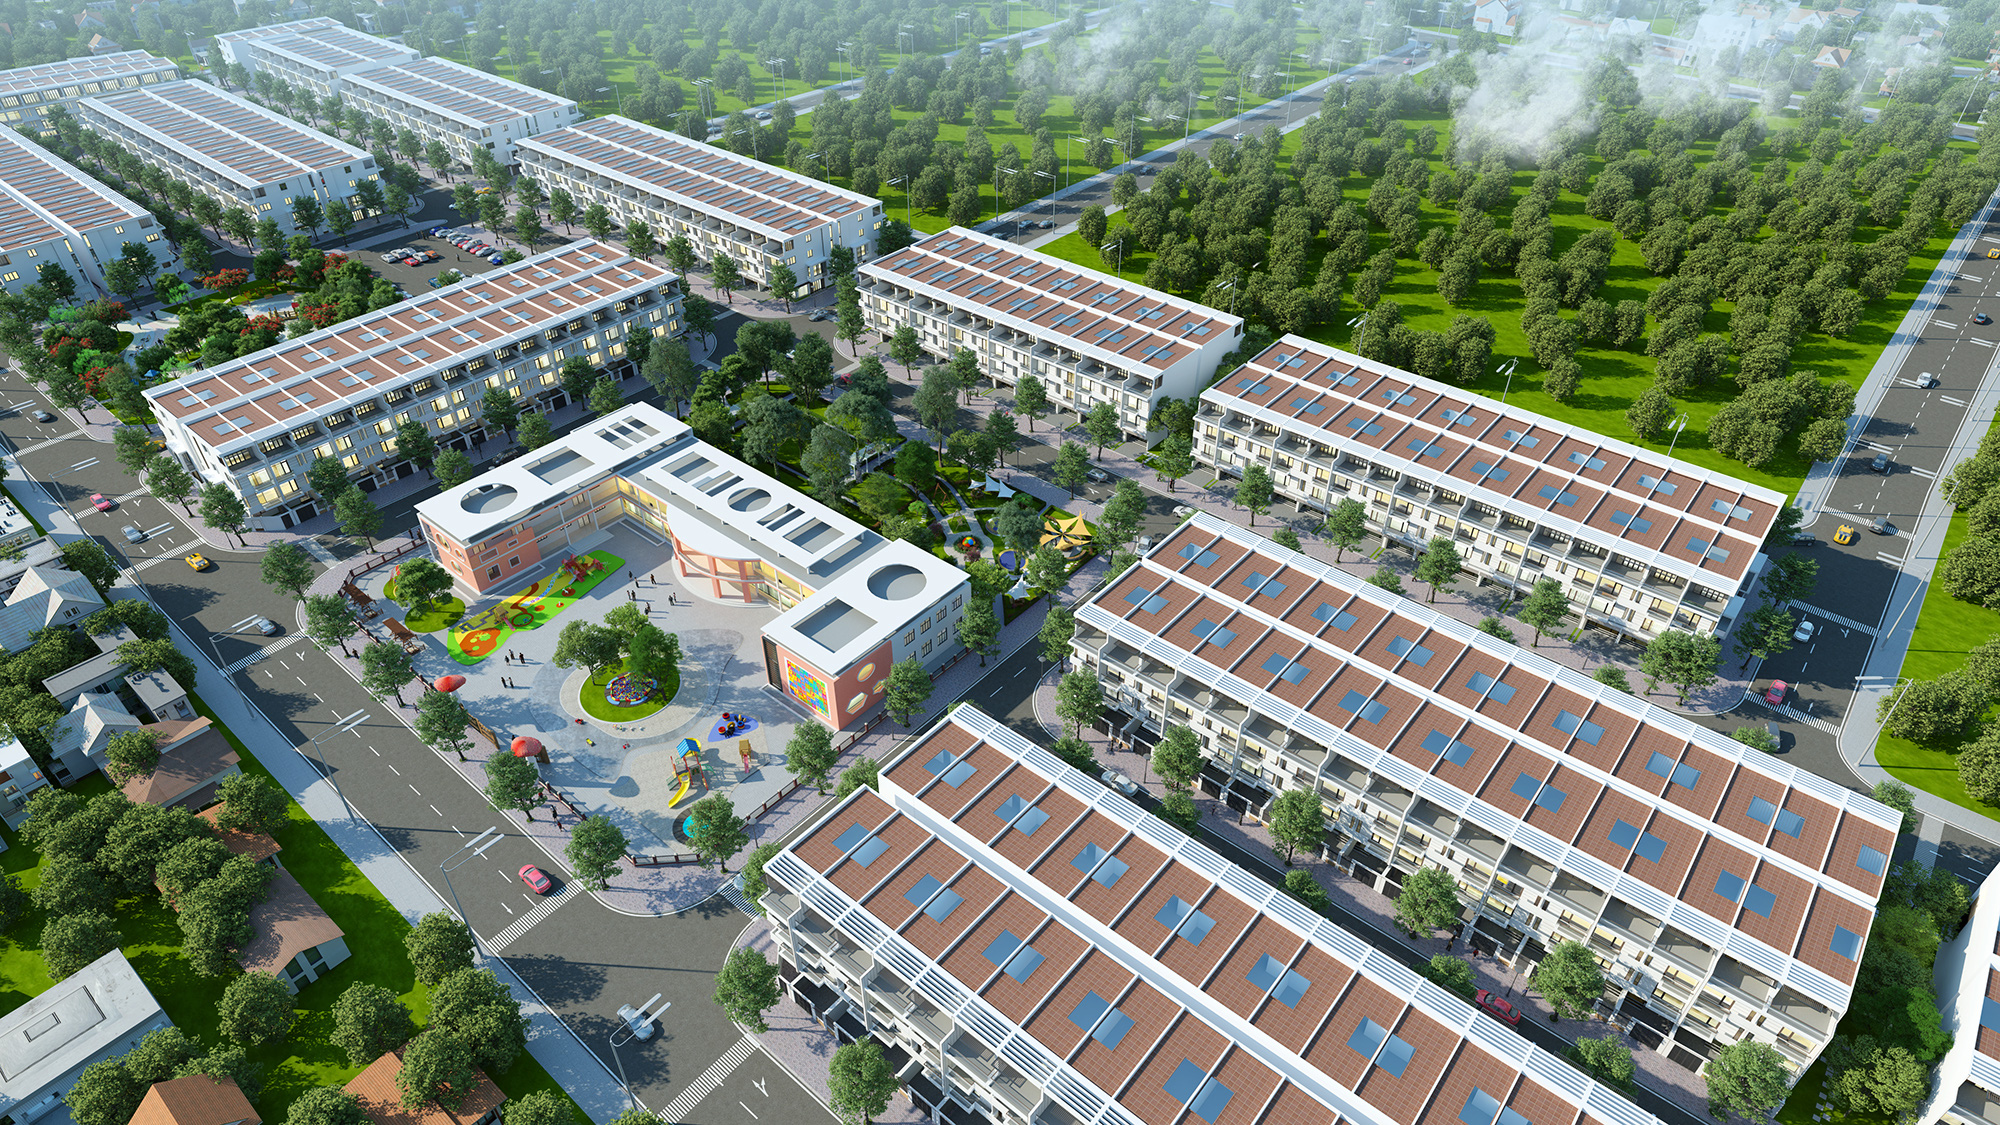 Ra mắt dự án đất nền Yên Phụ New Life – khu đất nền mới nổi tại Bắc Ninh vào ngày 12/7 - Ảnh 2.